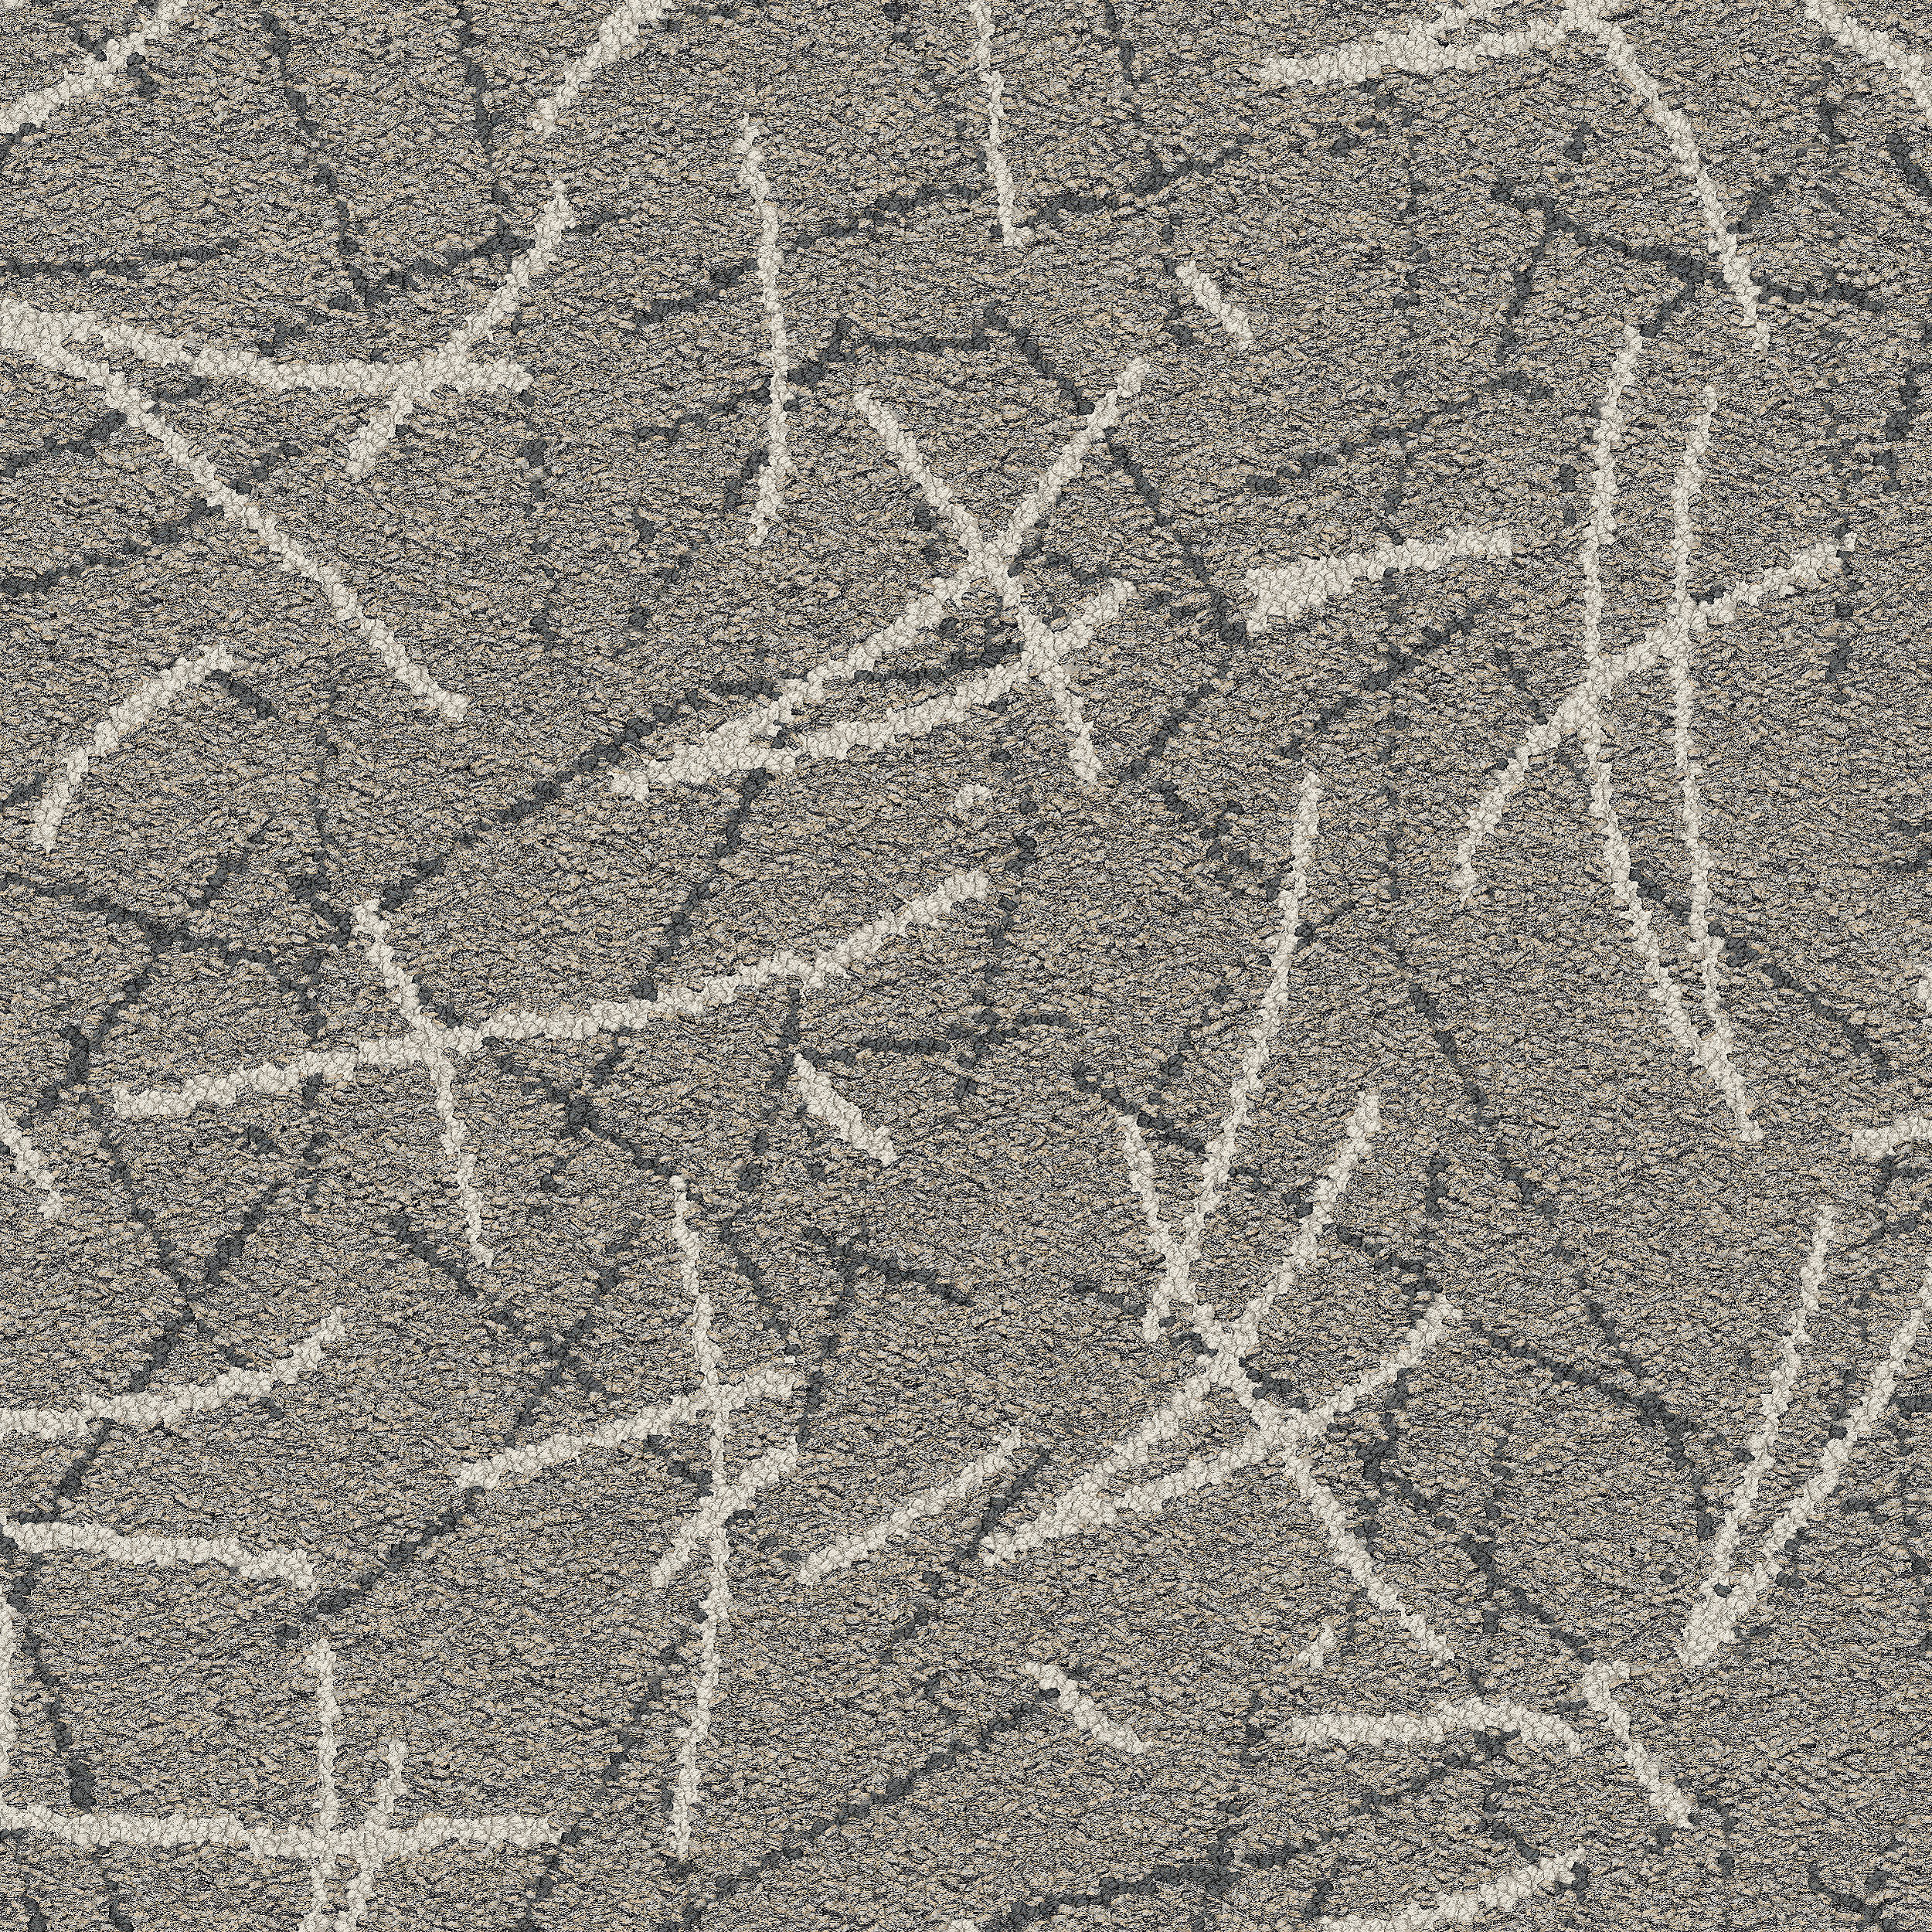 Unwound carpet tile in Nickel Bildnummer 4